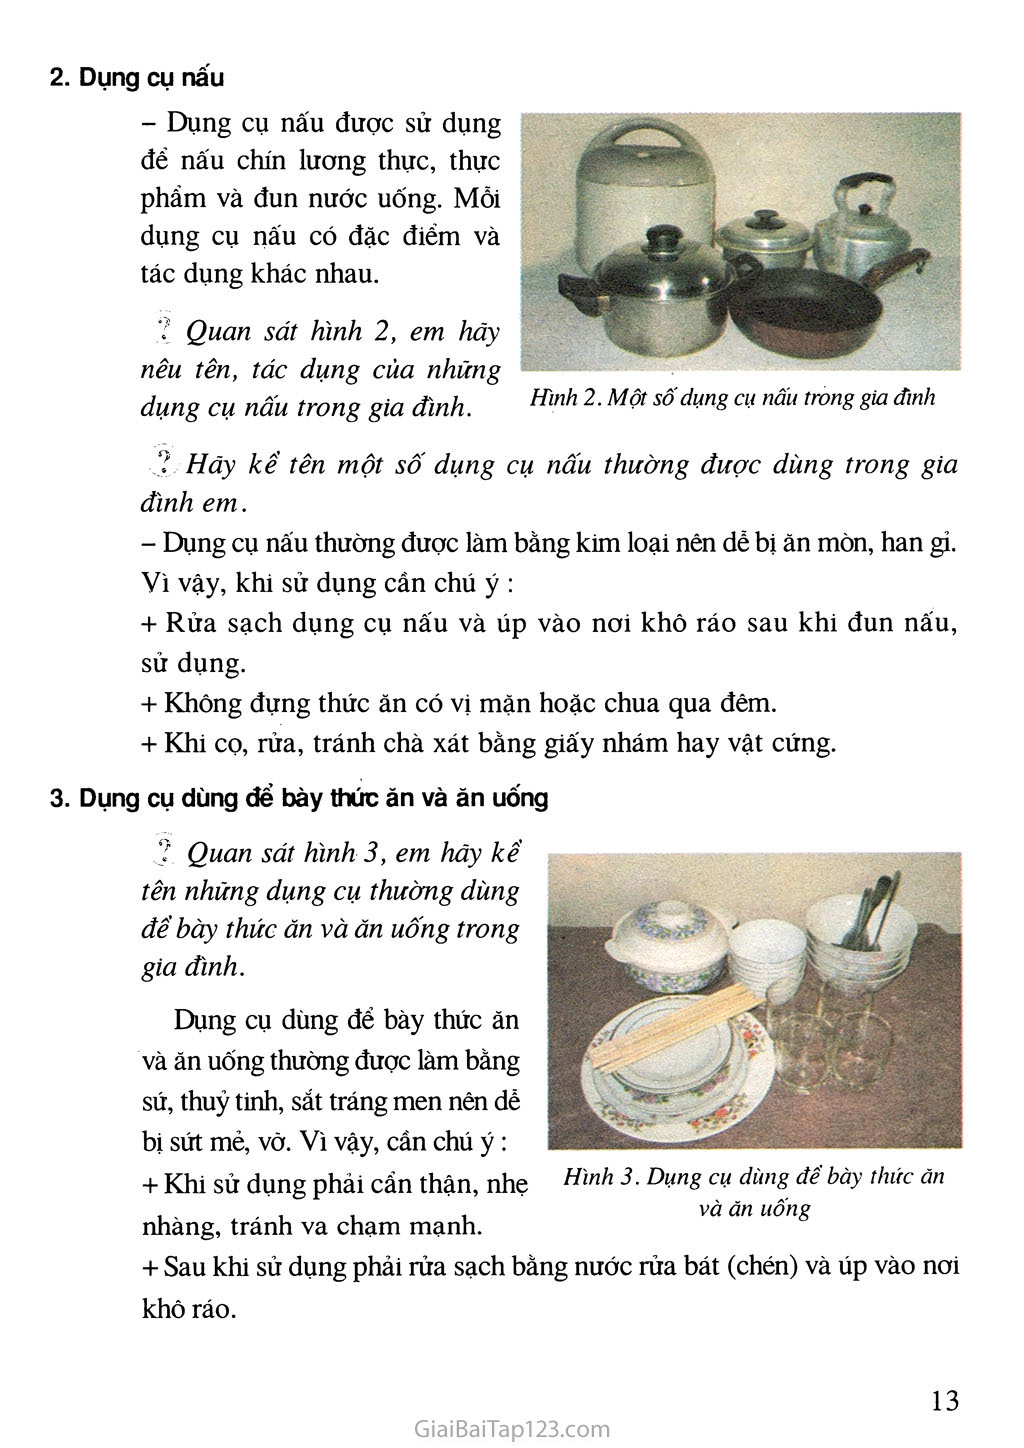 Bài 3. Một số dụng cụ nấu ăn và ăn uống trong gia đình trang 2